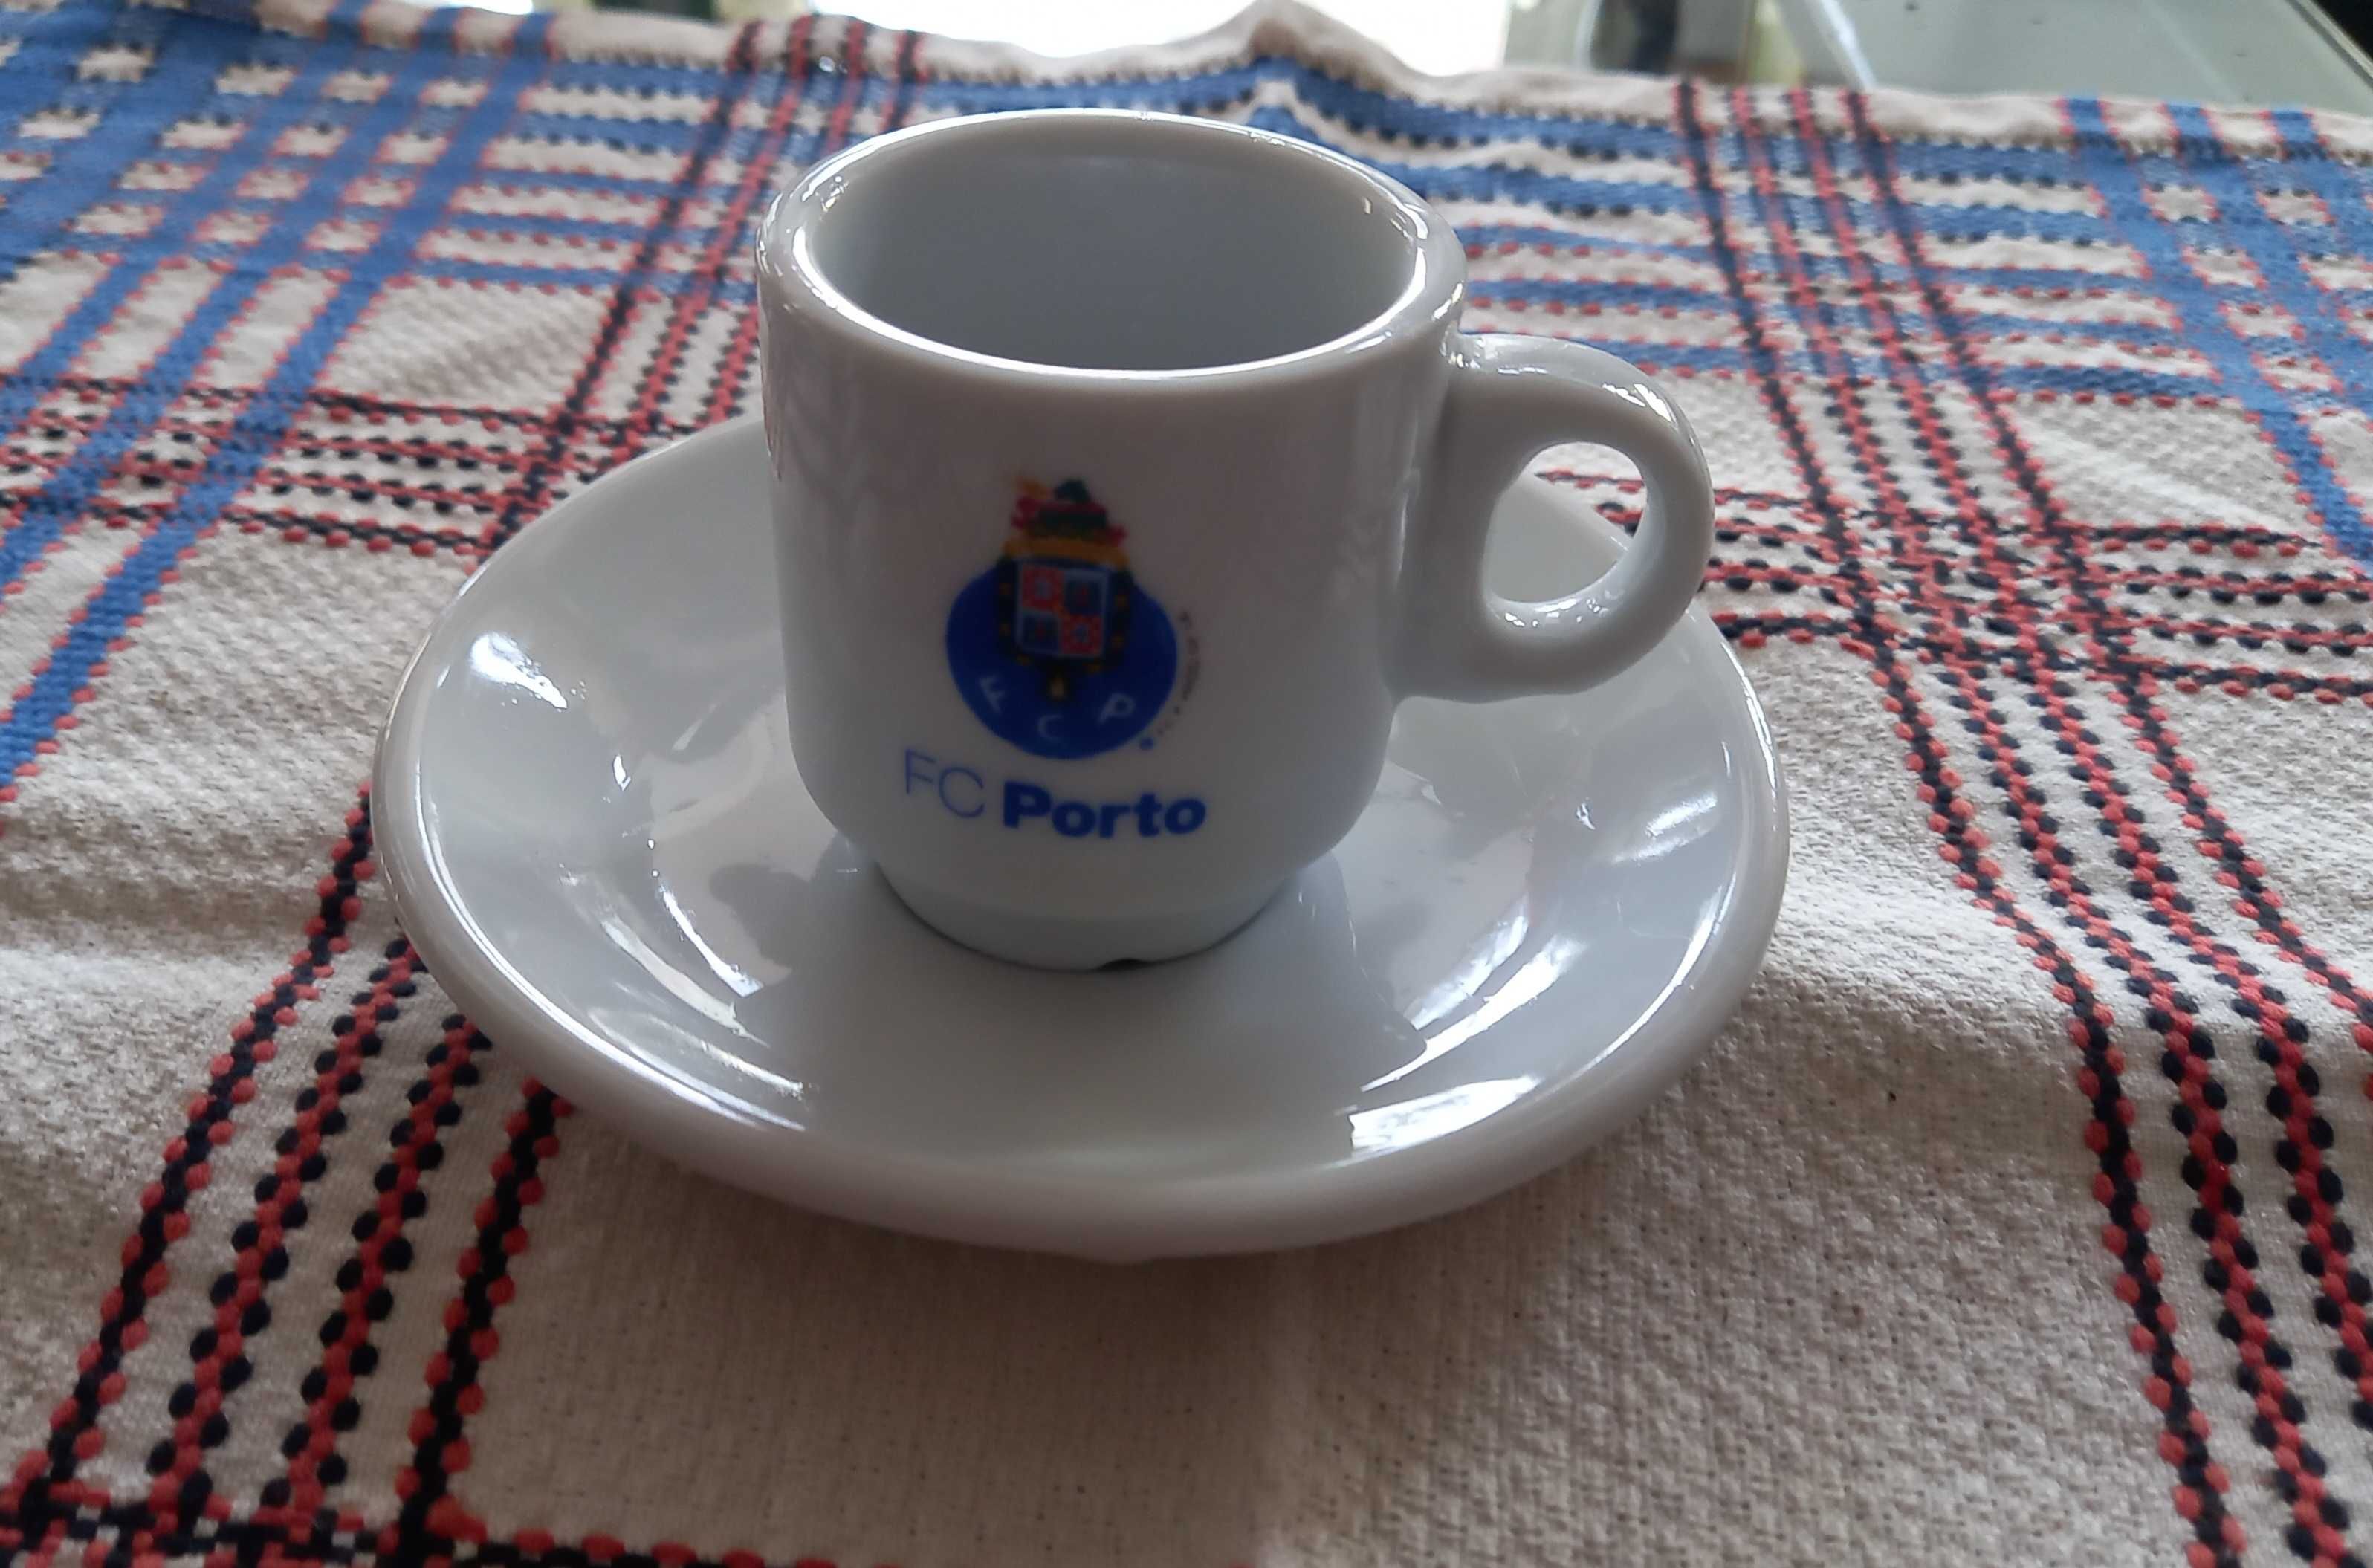 Artigos Futebol Clube Porto - Porta chave; Caneta; chávena, copo Novos